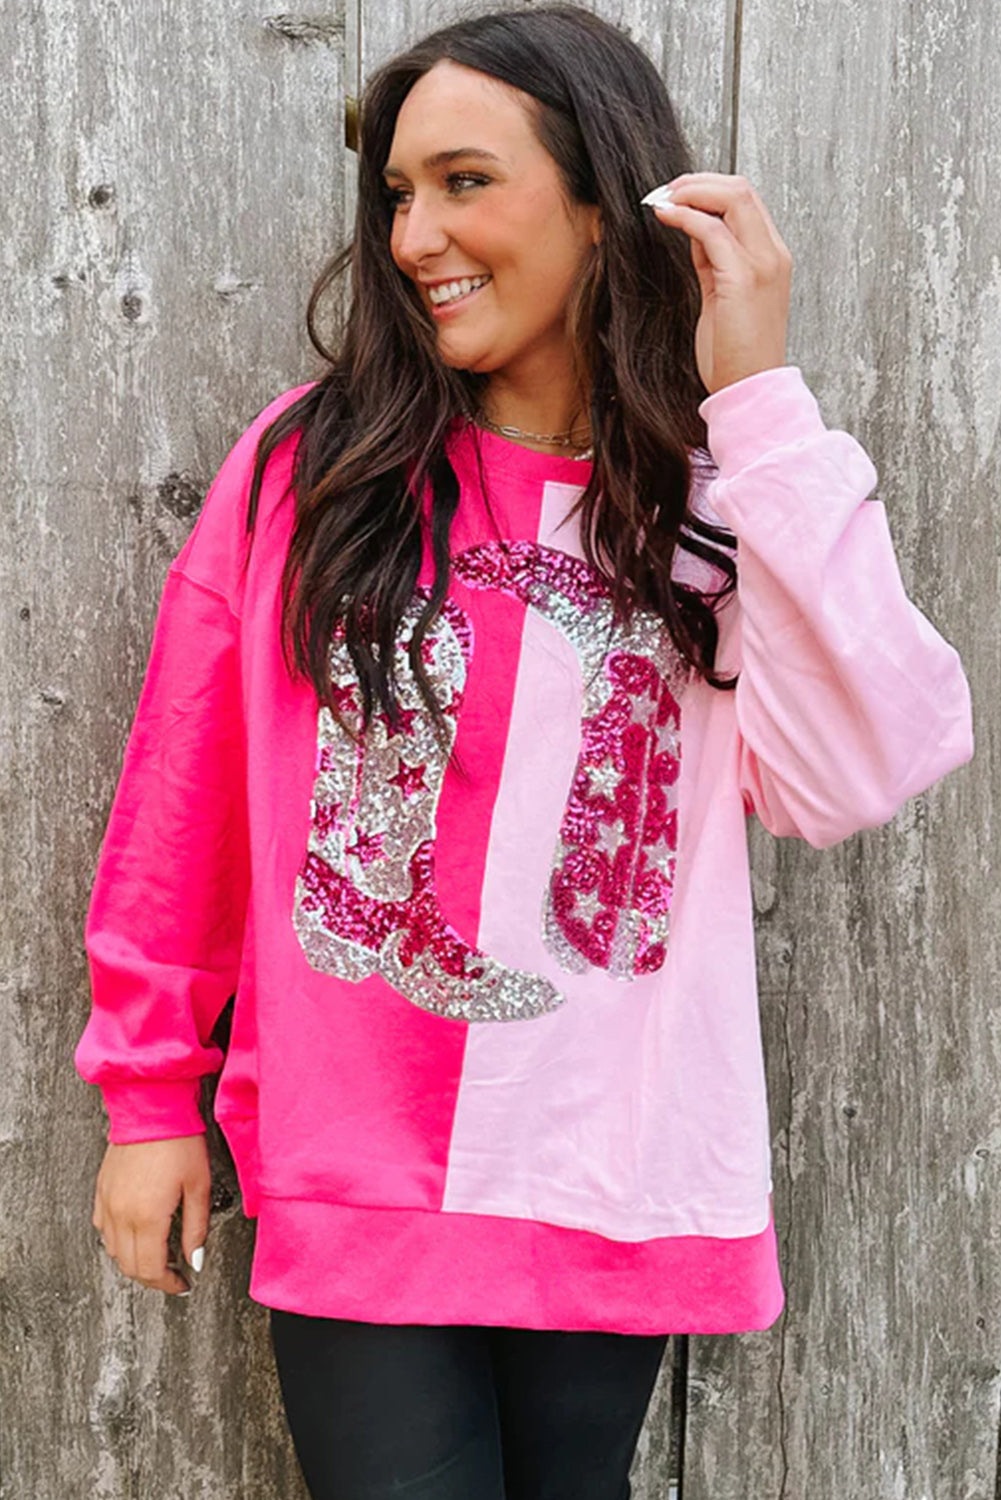 Sweatshirt mit Cowgirl-Stiefel-Grafik und Pailletten in Pink